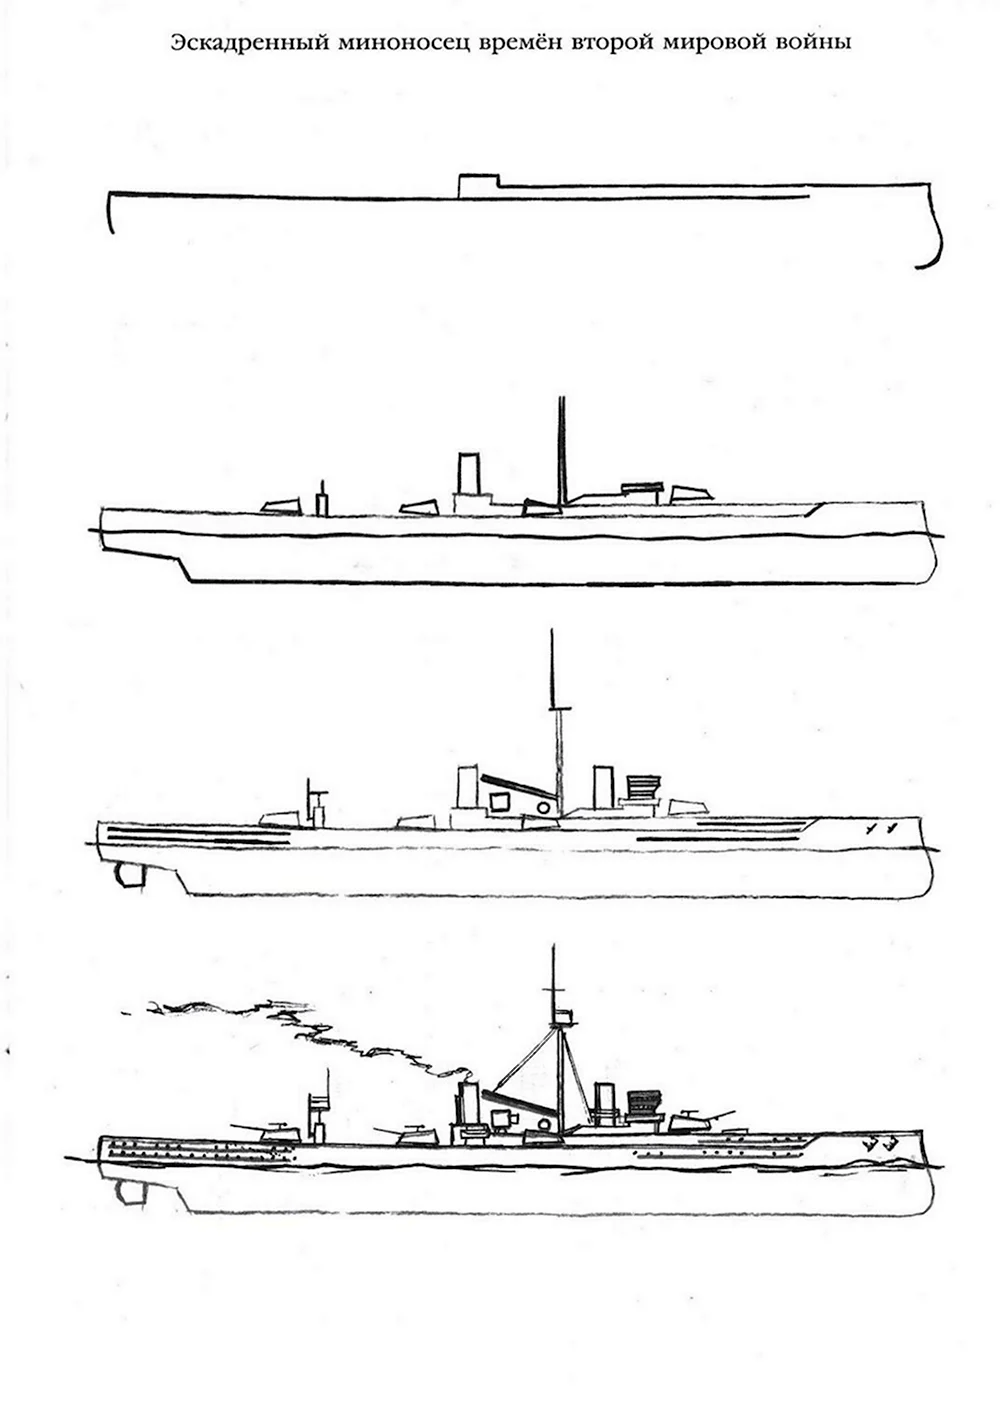 Схема рисования военного корабля